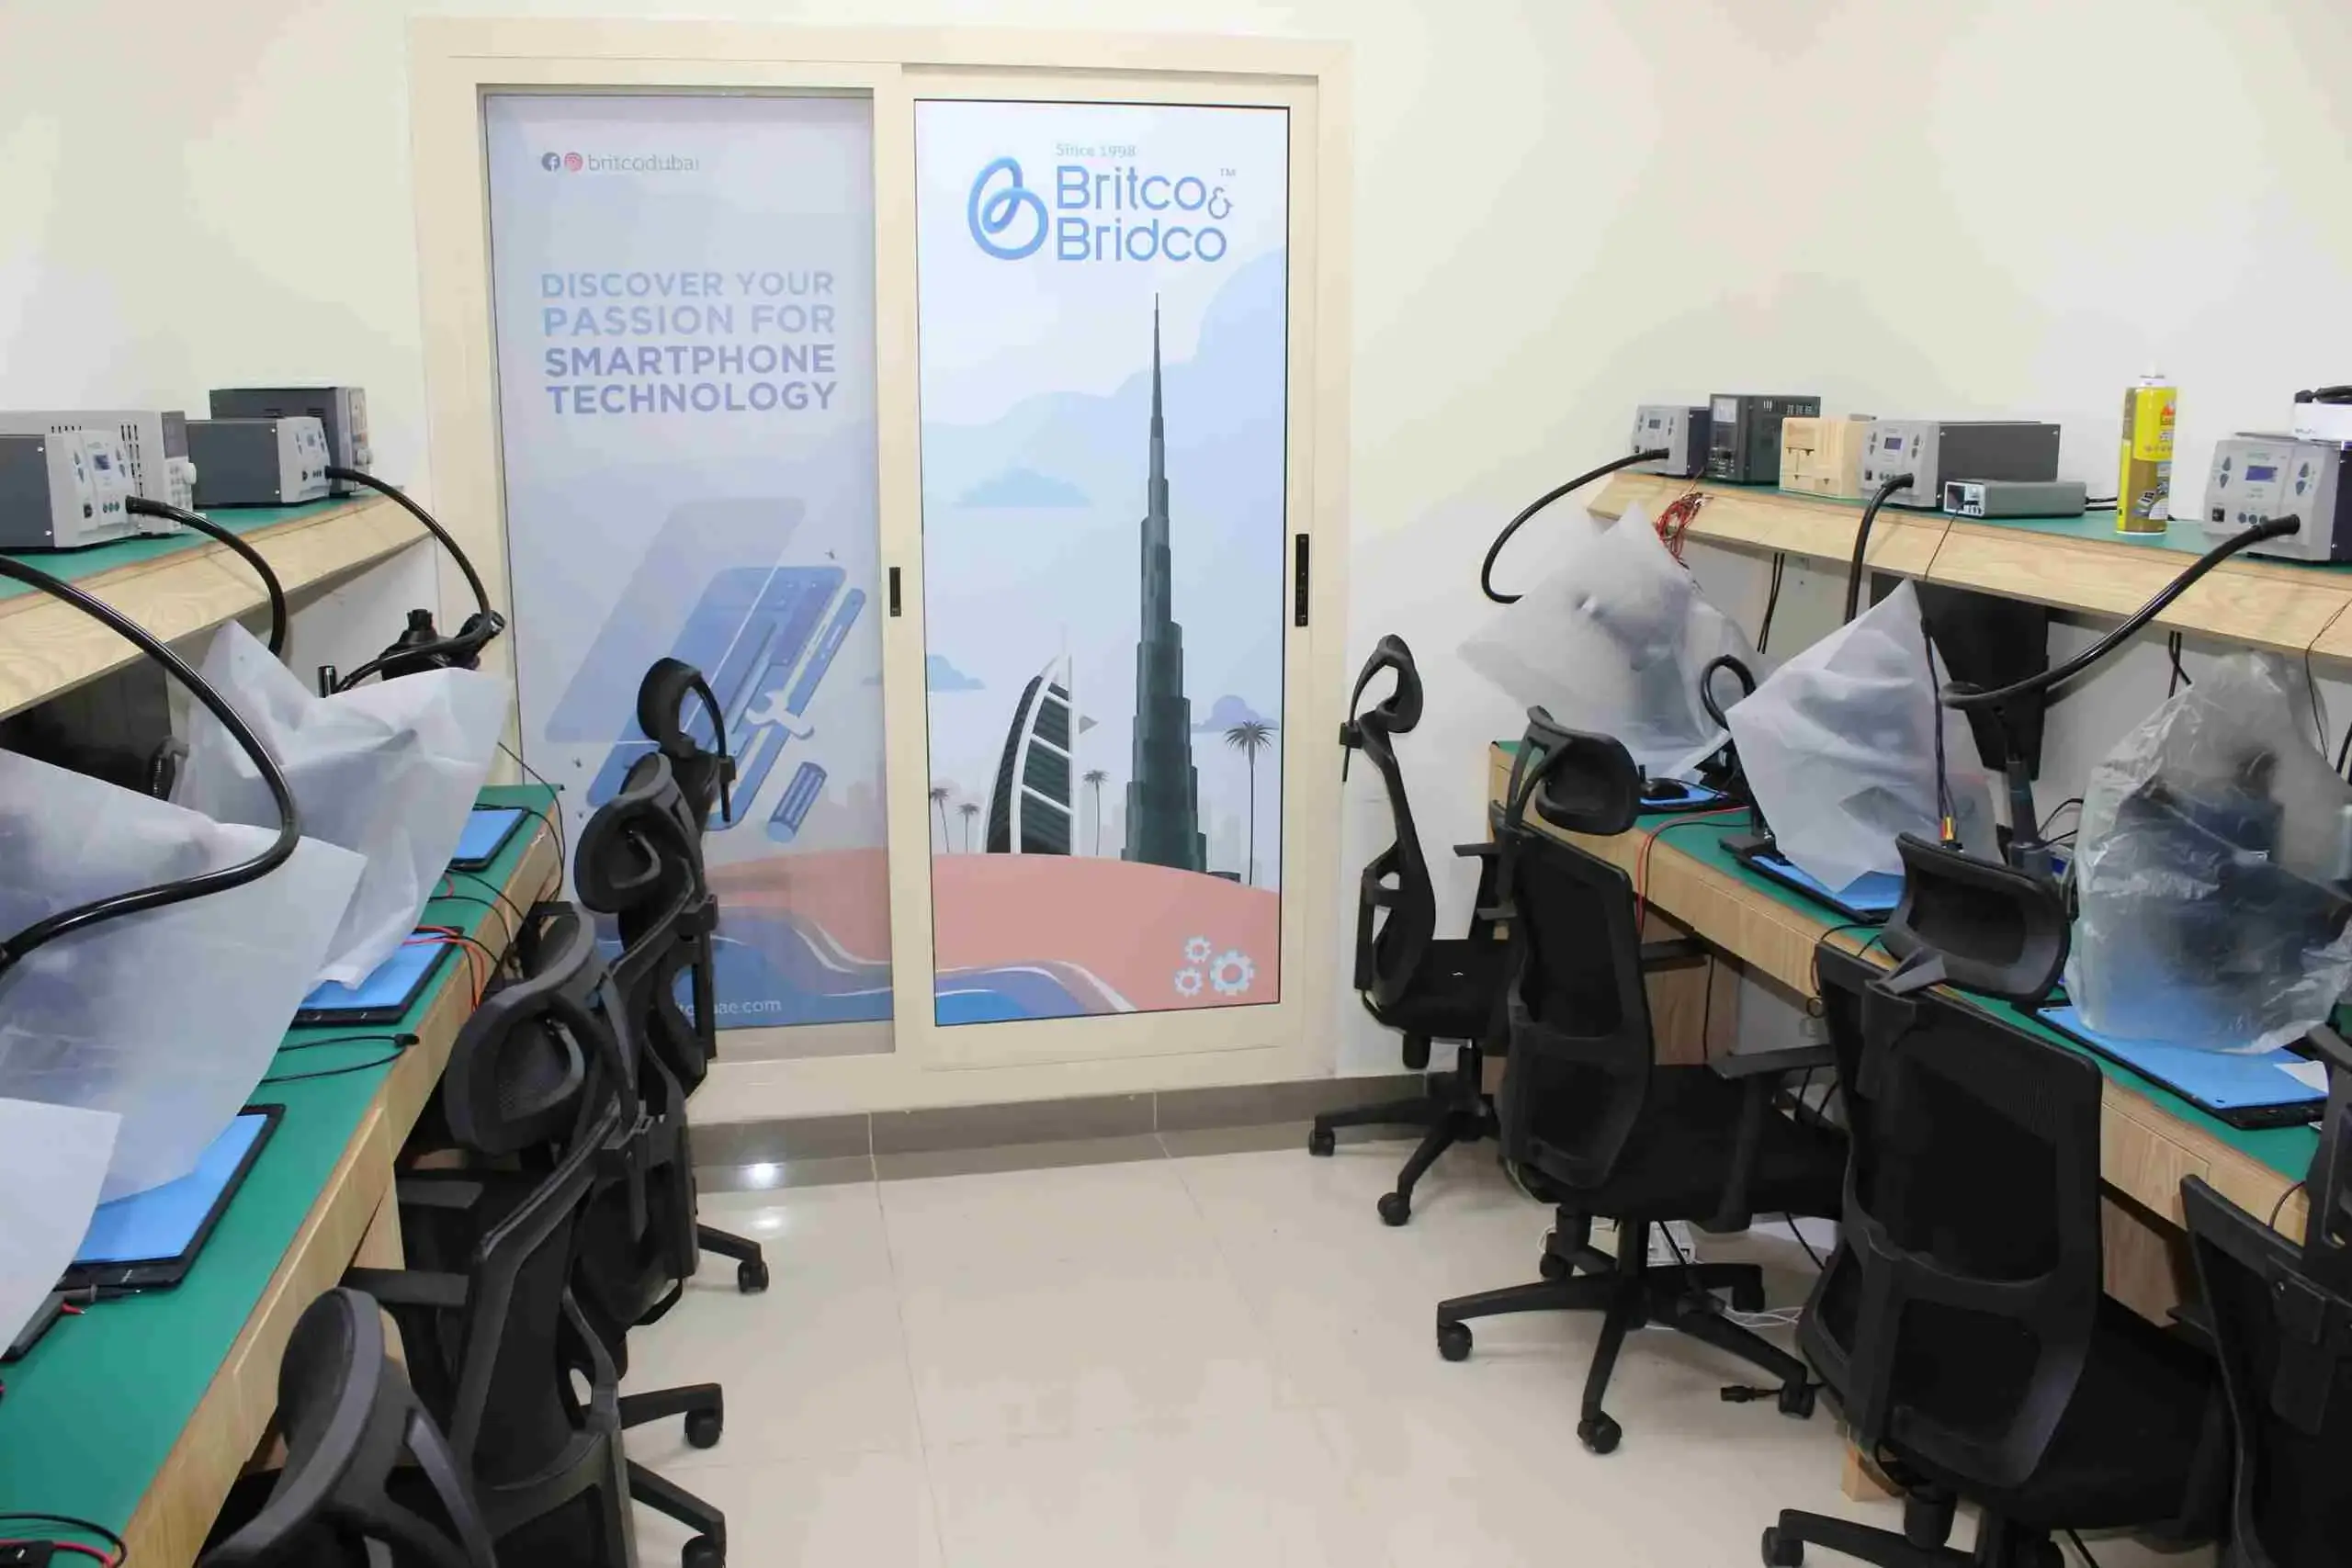 Mobile Repairing Institute | Mobile repairing courses in Dubai | Britco & Britco